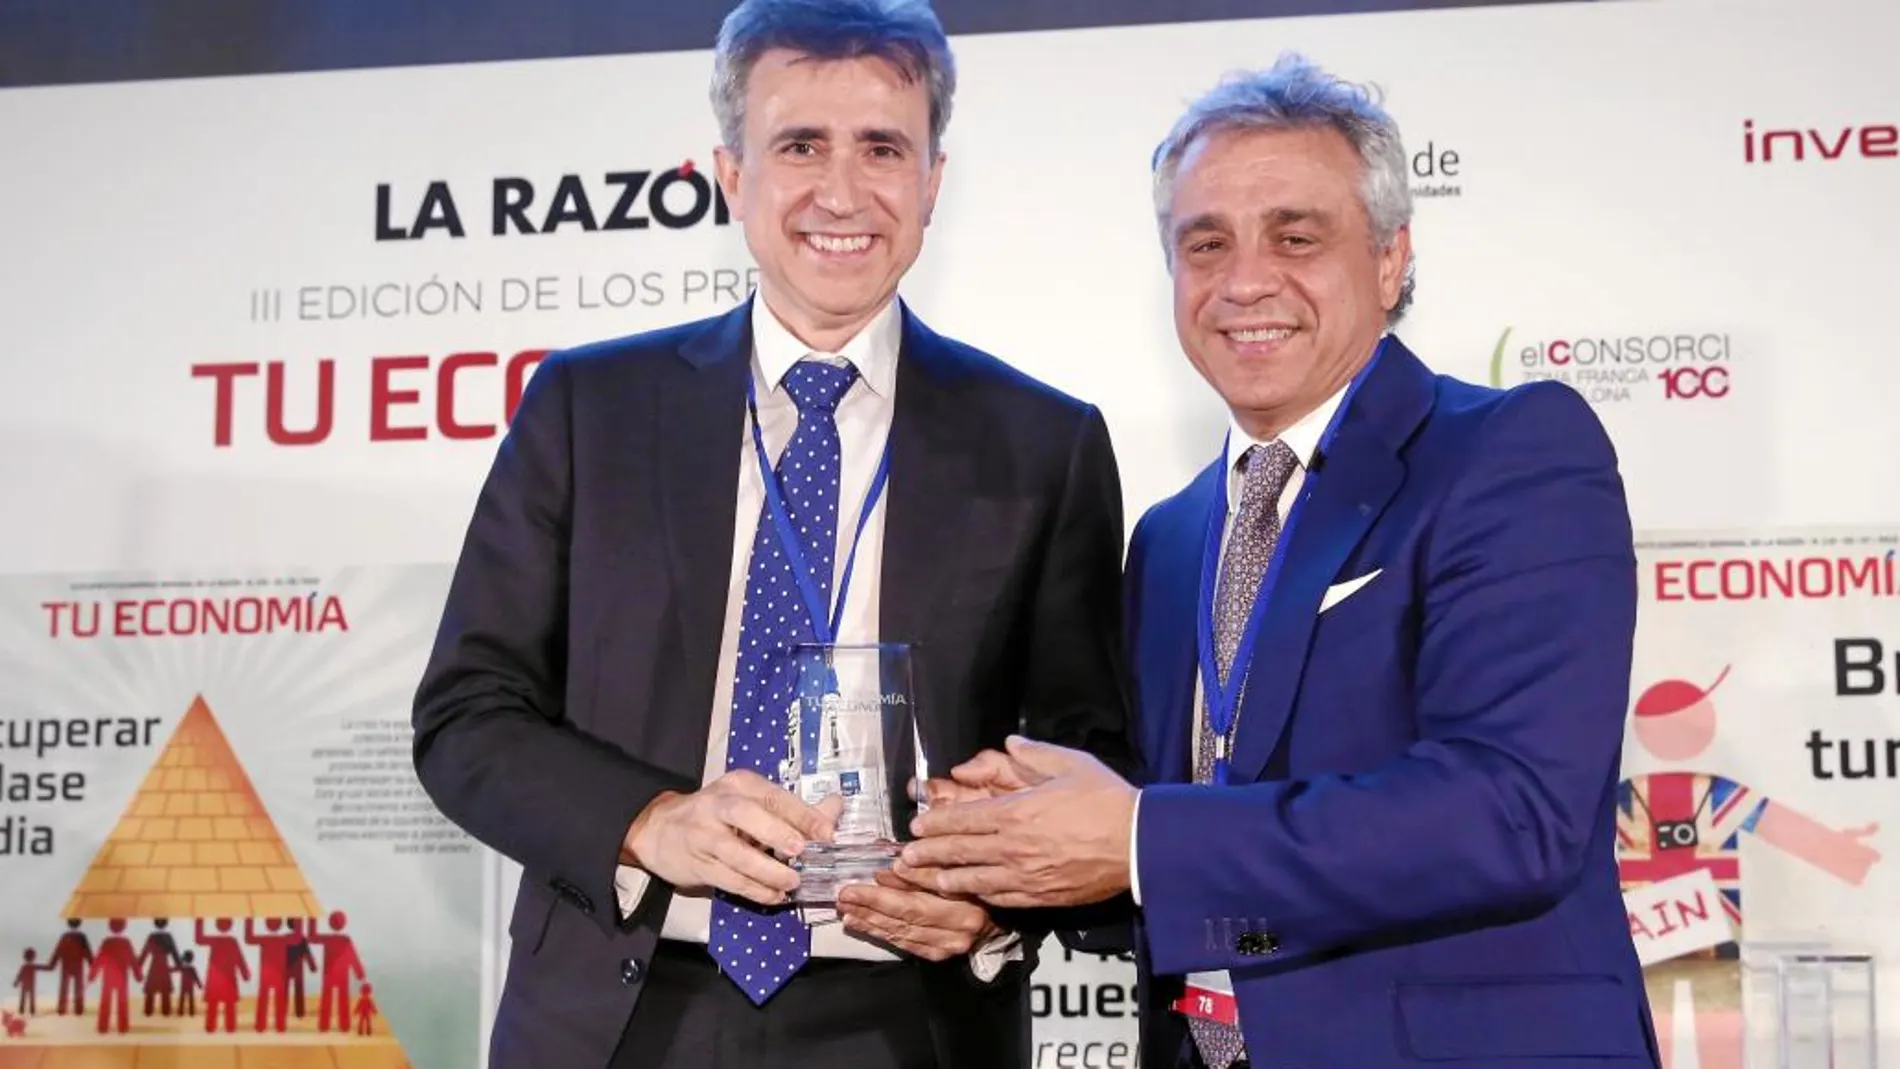 El CEO de Isdin, Juan Naya, recibió el galardón de manos del subdirector general de LA RAZÓN, Andrés Navarro.